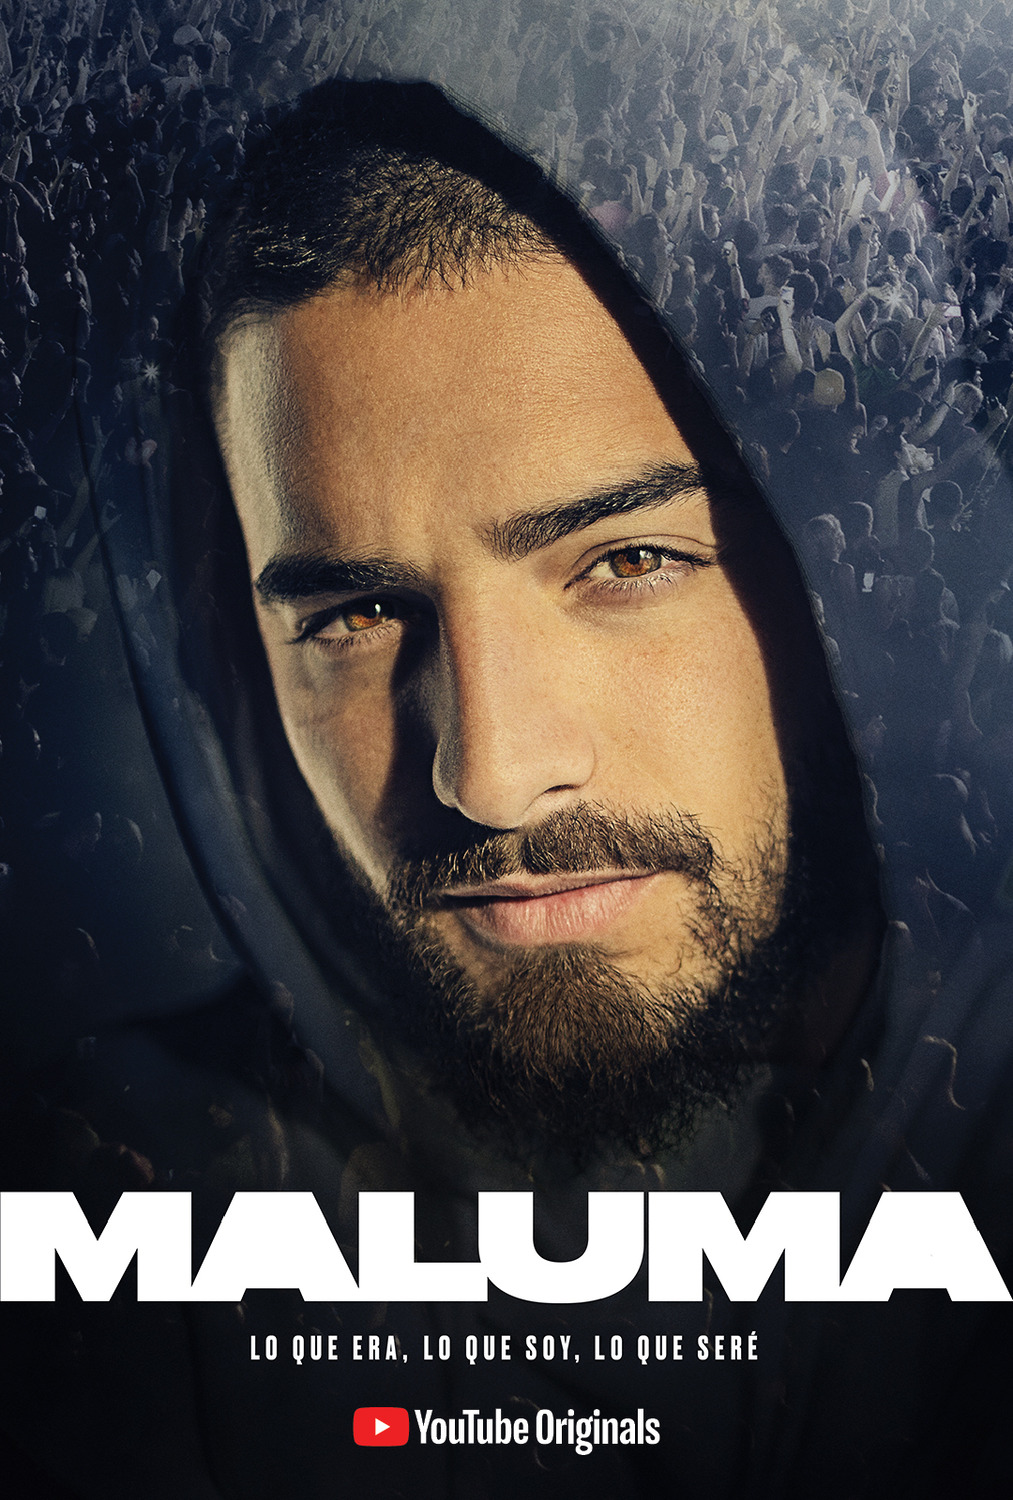 Extra Large TV Poster Image for Maluma: Lo Que Era, Lo Que Soy, Lo Que Sere 